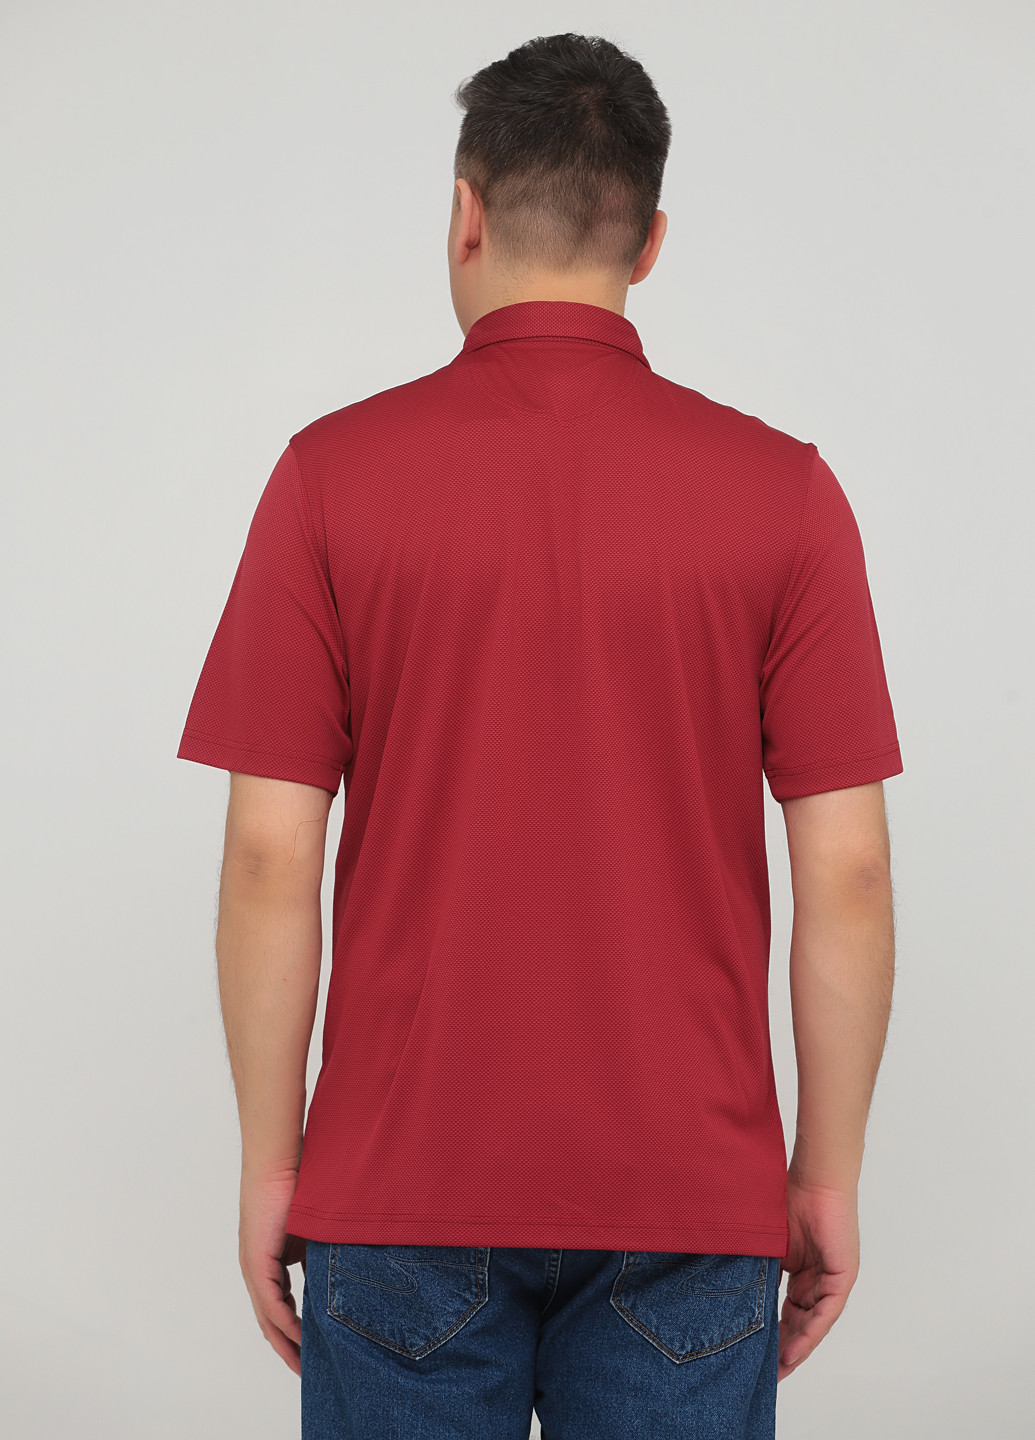 Бордовая футболка-поло для мужчин Greg Norman однотонная